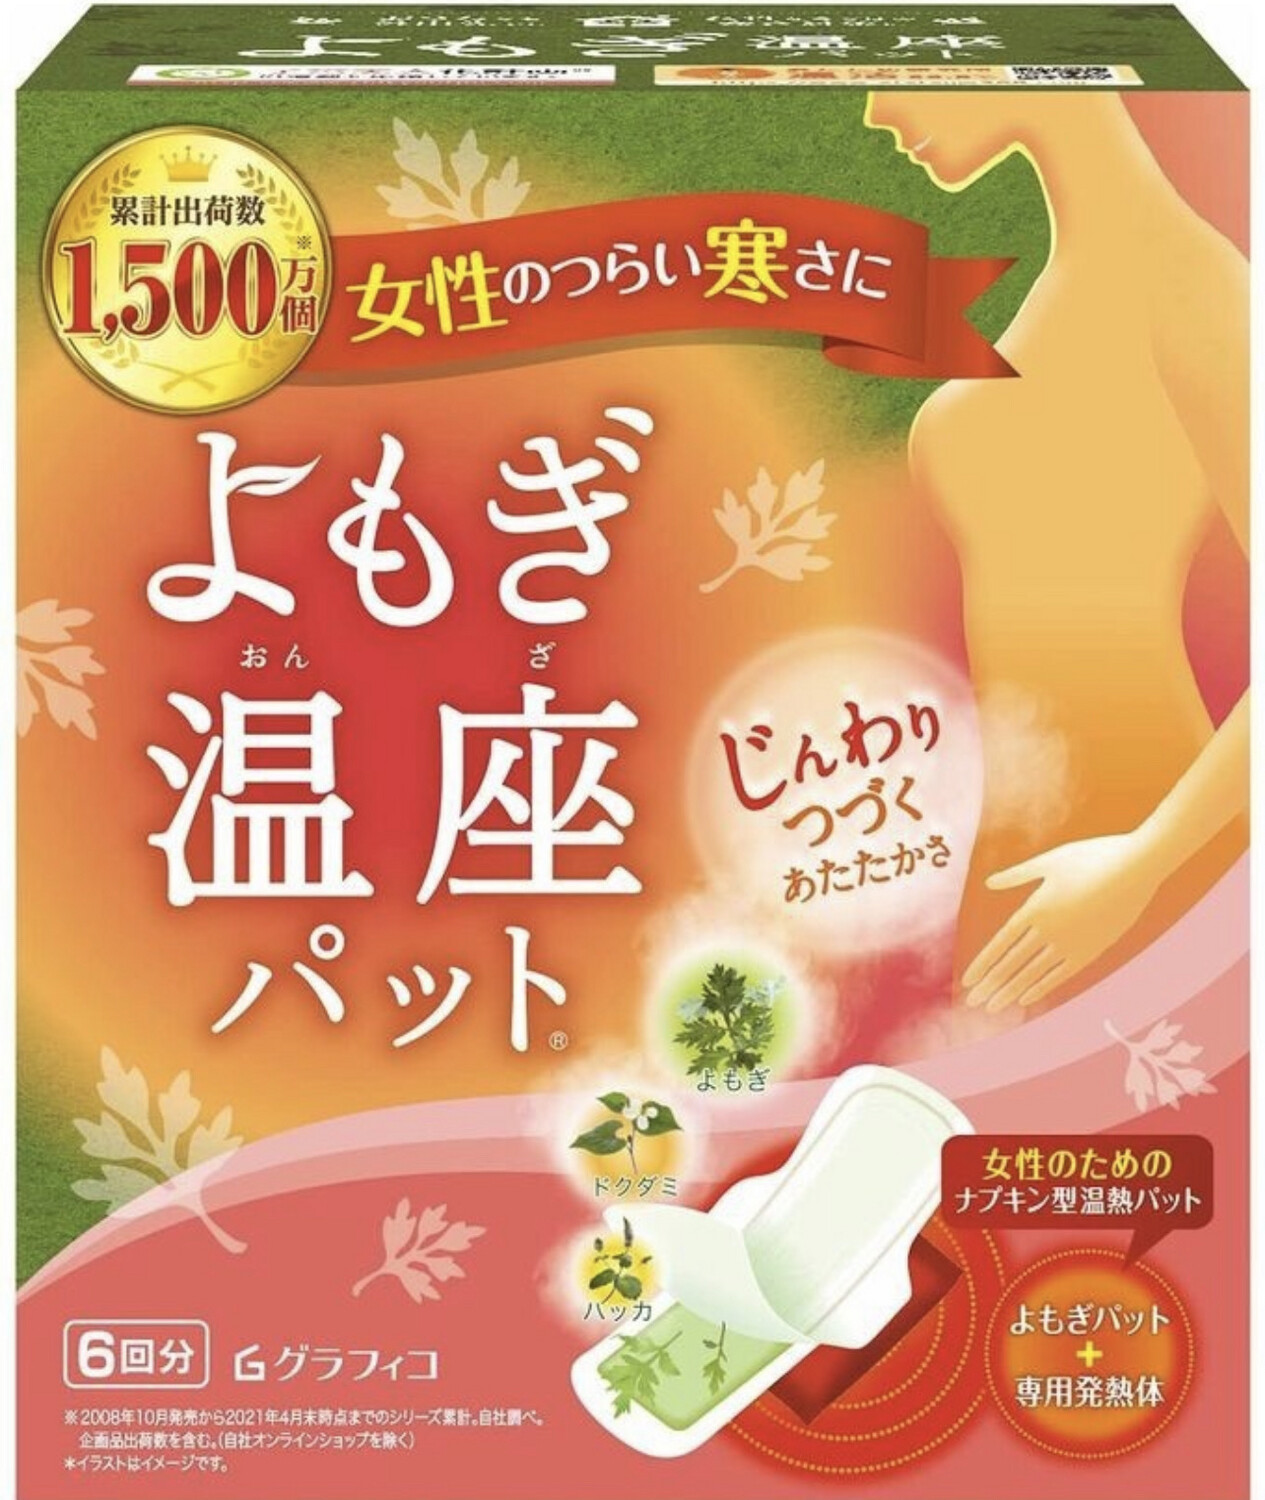 YUZUKI Beauty - лечебные тепловые прокладки с натуральными травами